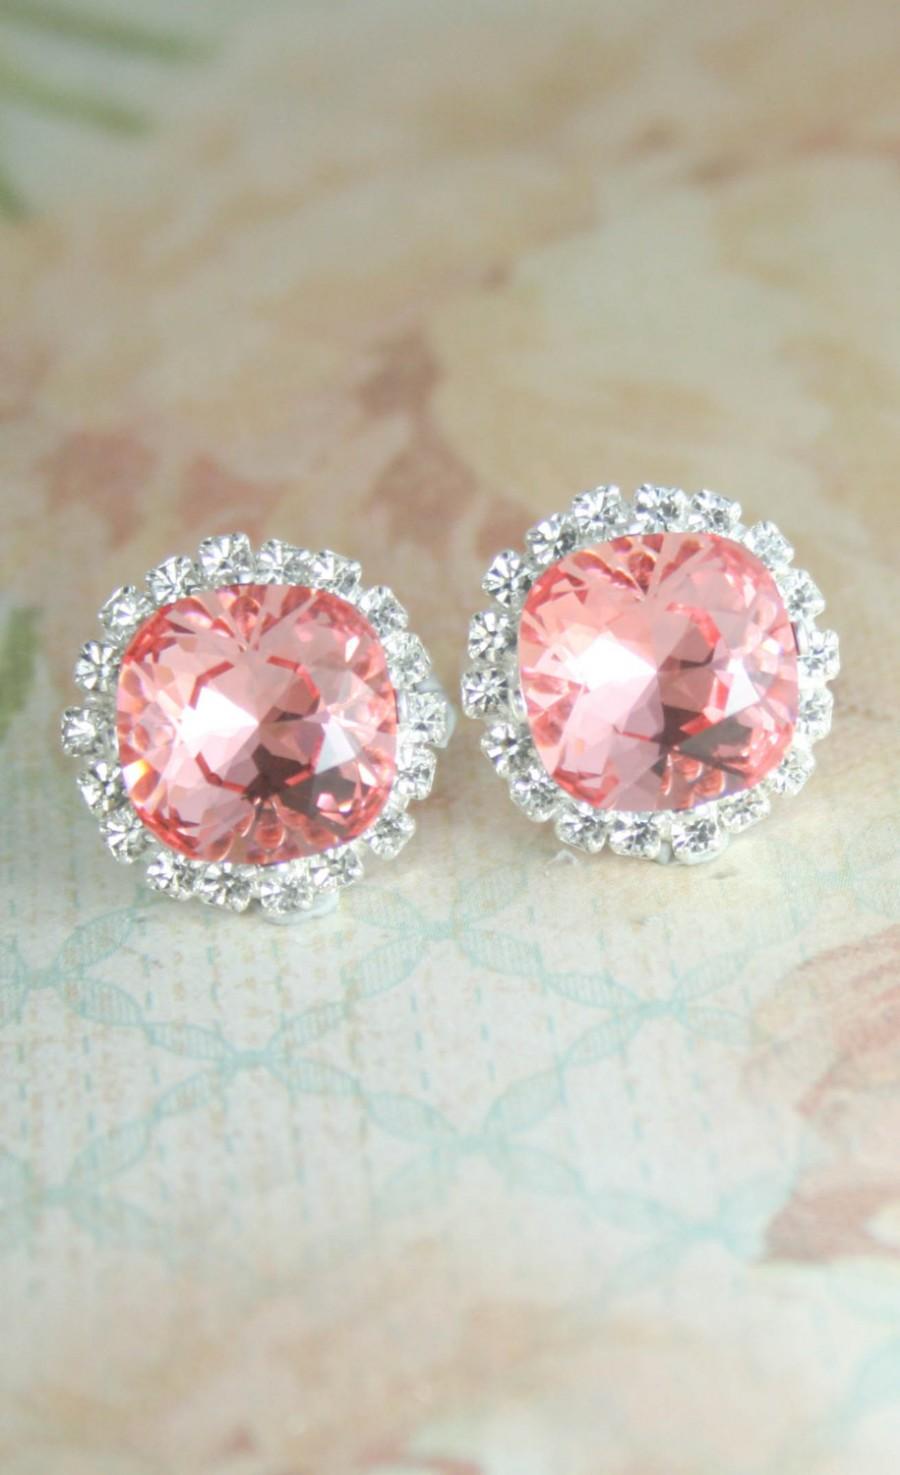 Mariage - Pink crystal earrings,swarovski earrings,square earrings,stud earrings,crystal earrings,bridal earrings,bridesmaid earrings,pink wedding